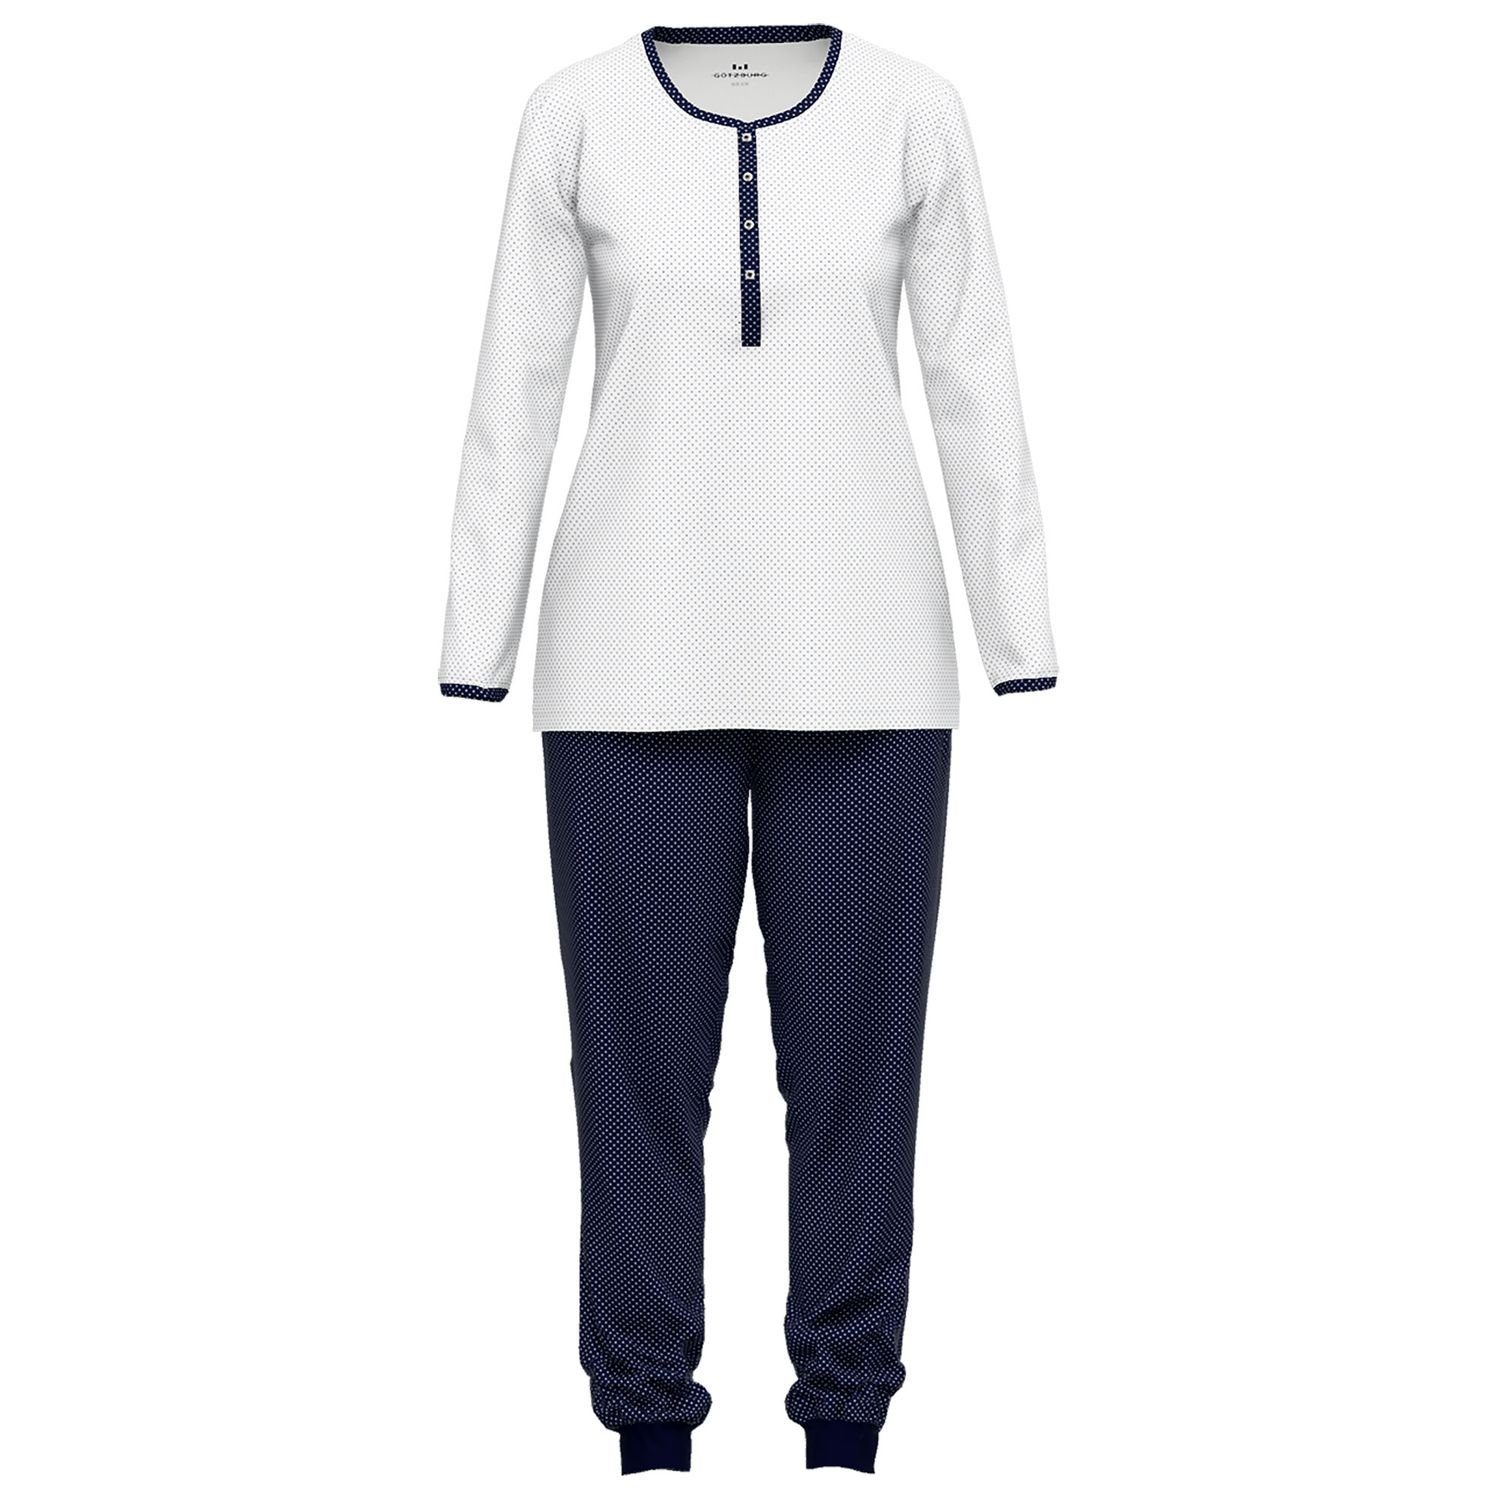 GÖTZBURG Schlafanzug mit Henley-Auschnitt, Knöpfe, langarm, weich, bequem, reine Baumolle weiß / navy gepunktet | Pyjama-Sets